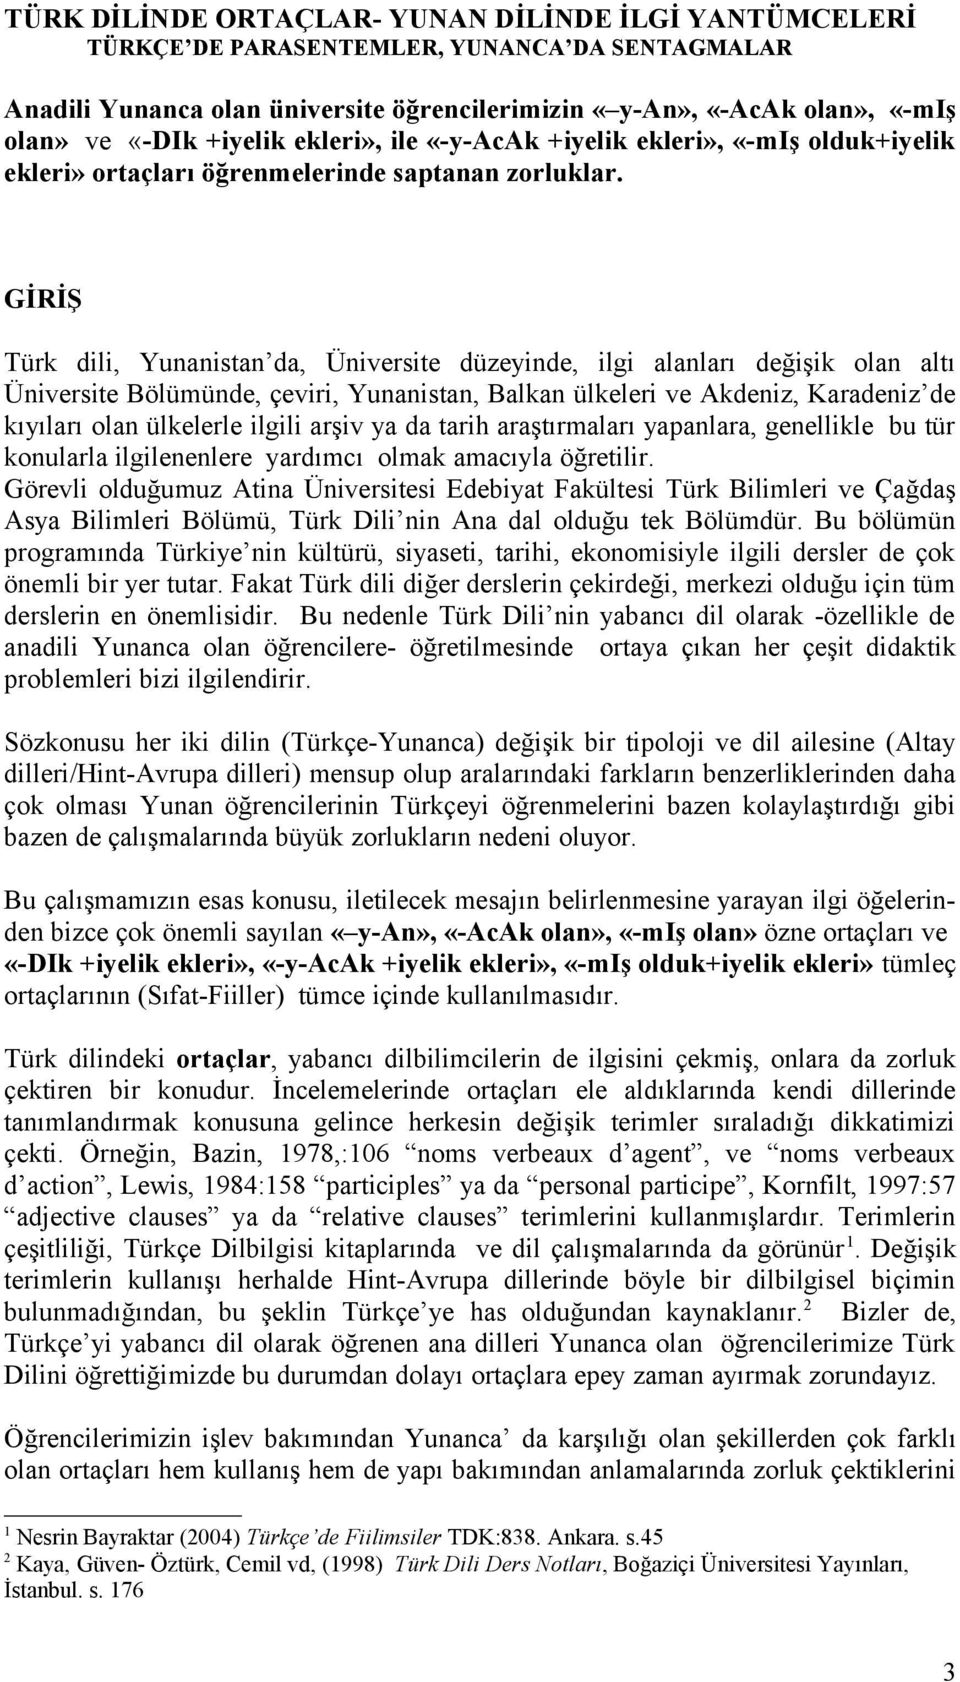 GİRİŞ Türk dili, Yunanistan da, Üniversite düzeyinde, ilgi alanları değişik olan altı Üniversite Bölümünde, çeviri, Yunanistan, Balkan ülkeleri ve Akdeniz, Karadeniz de kıyıları olan ülkelerle ilgili